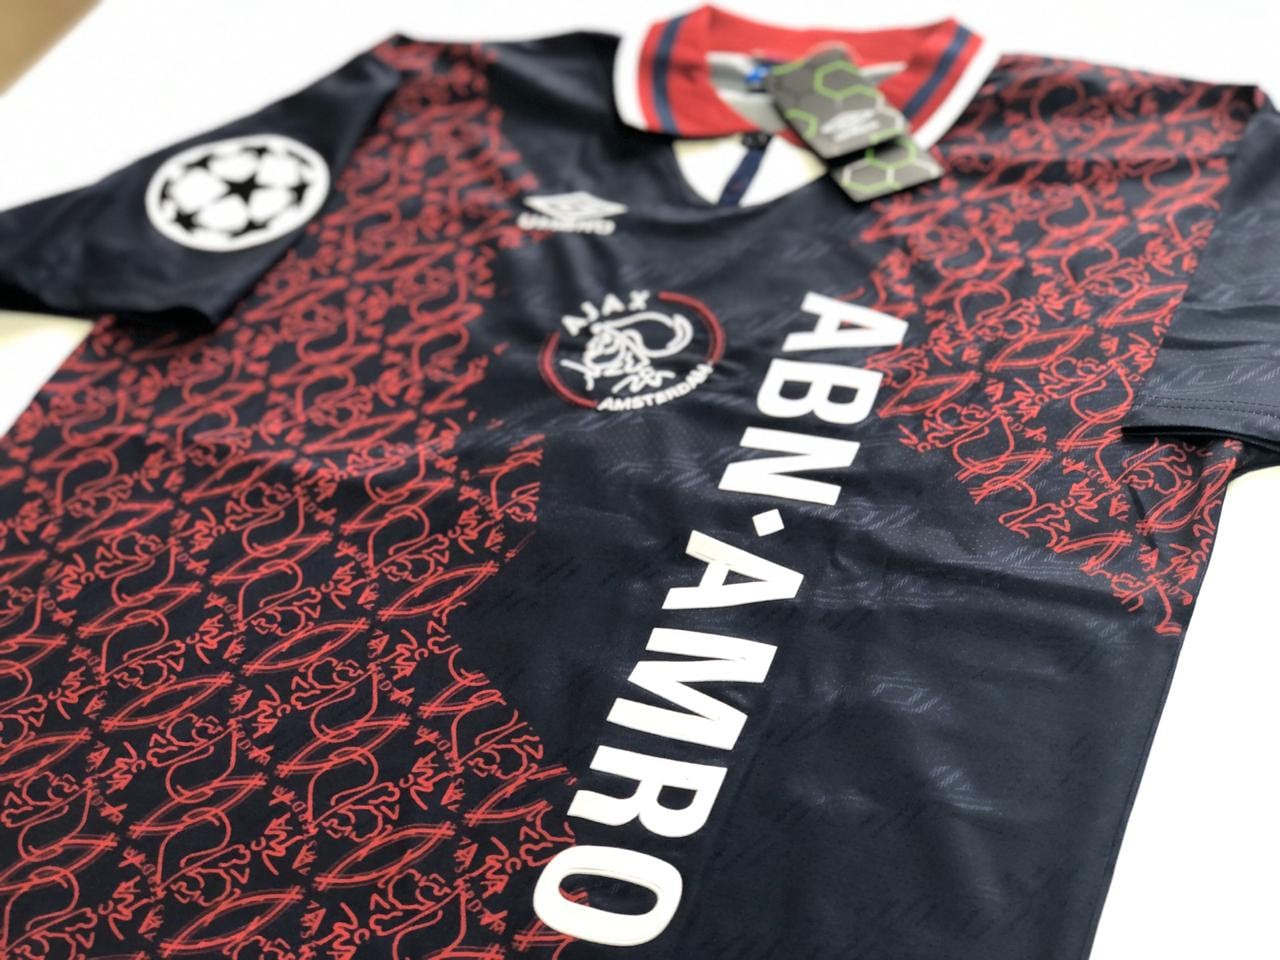 nadering biografie Laster Ajax Away 1995 Retro Shirt Overmars Litmanen - Etsy